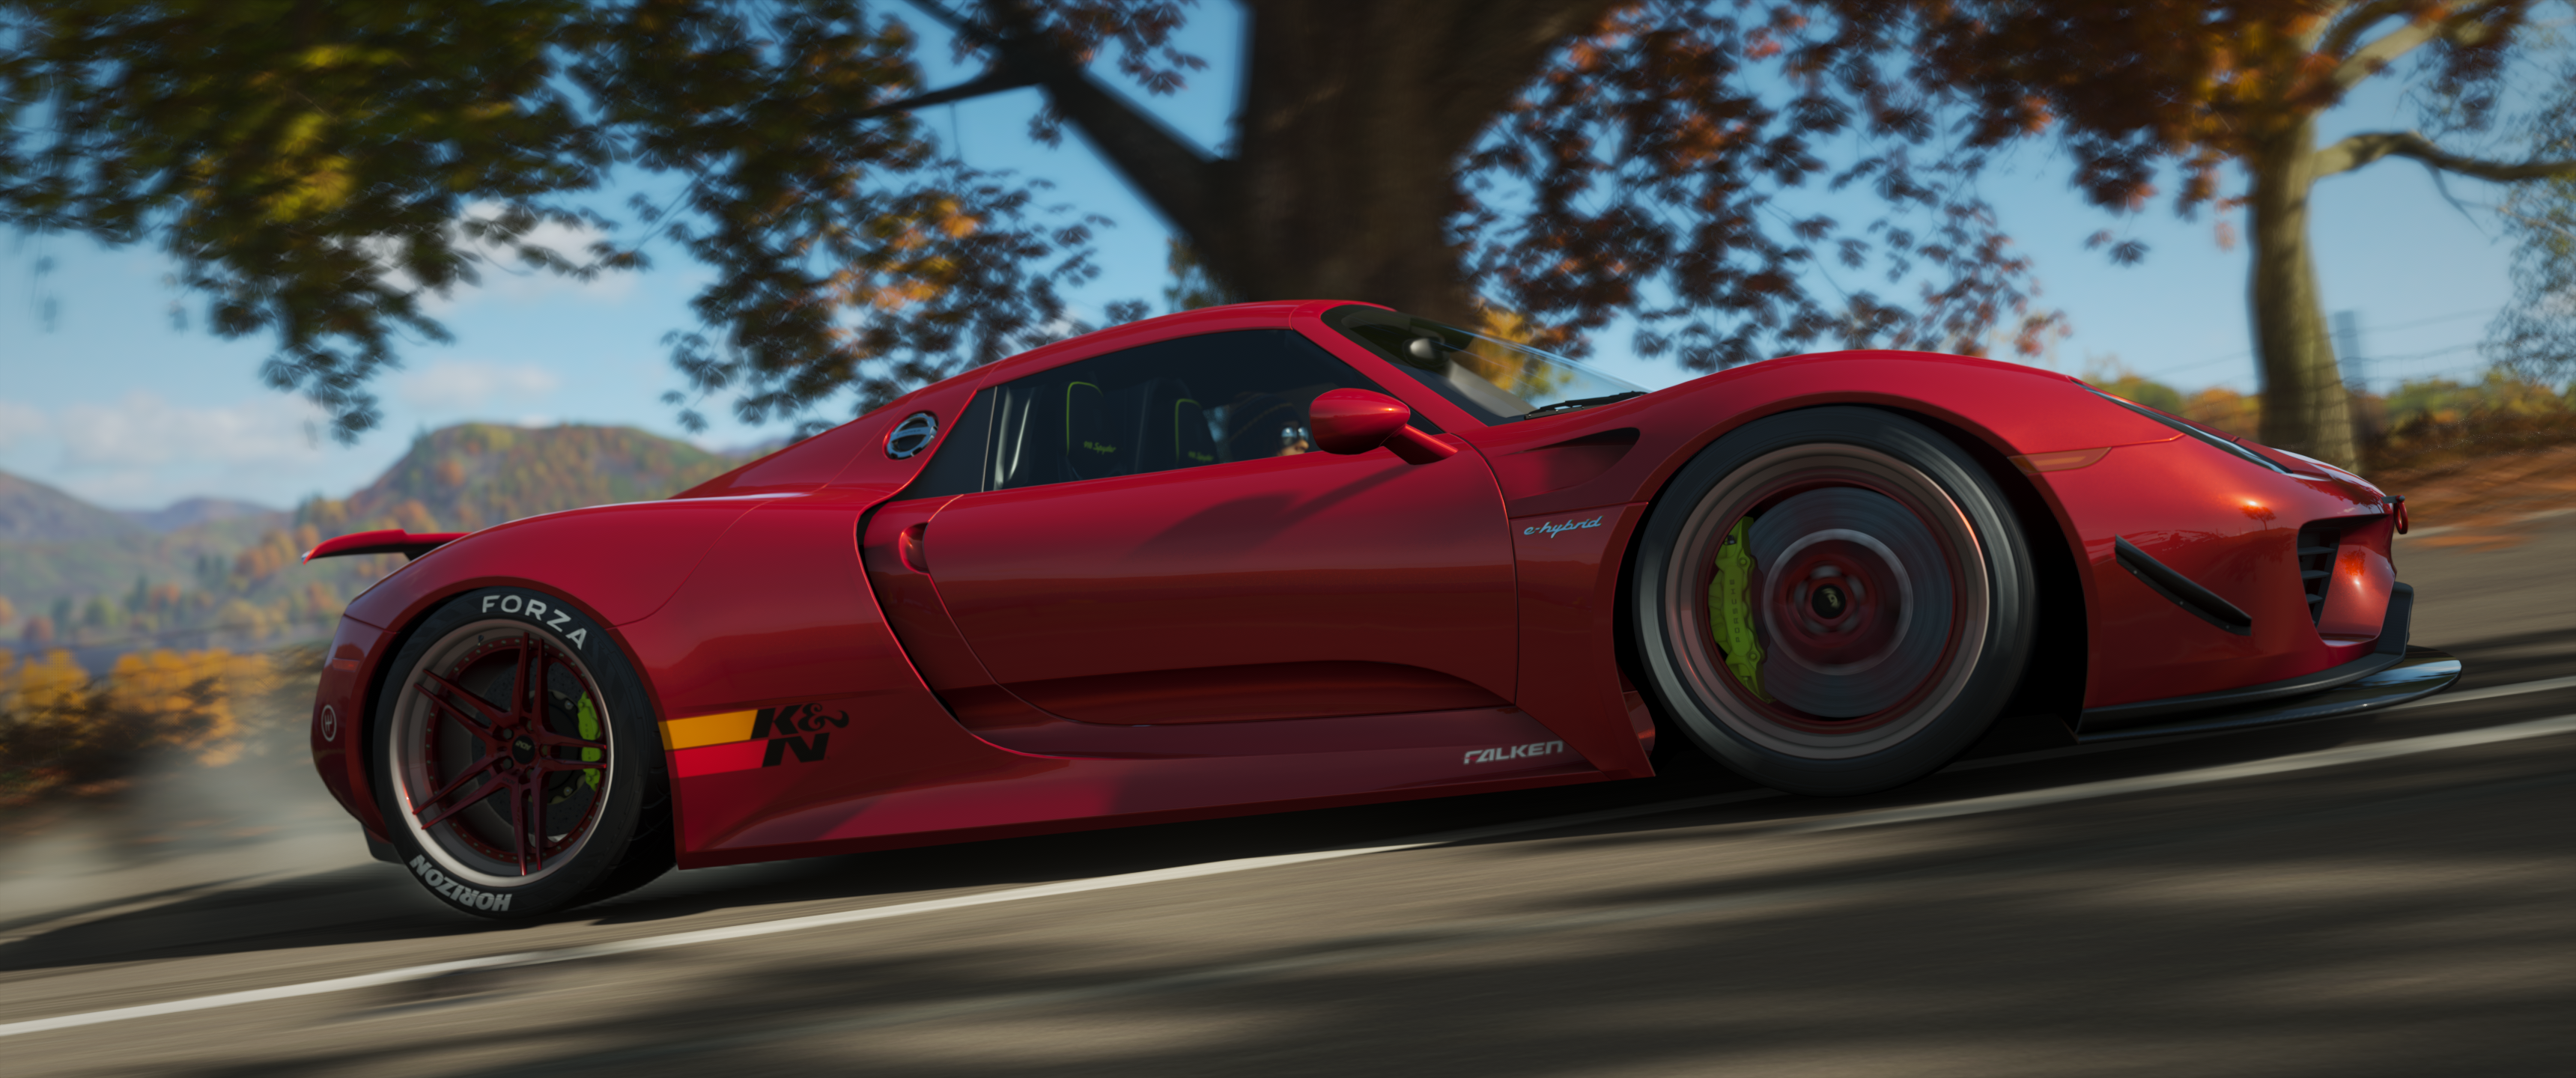 Forza Forza Horizon 4 Racing Car Ultrawide Video Games Porsche 918 Spyder Drift 3440x1440